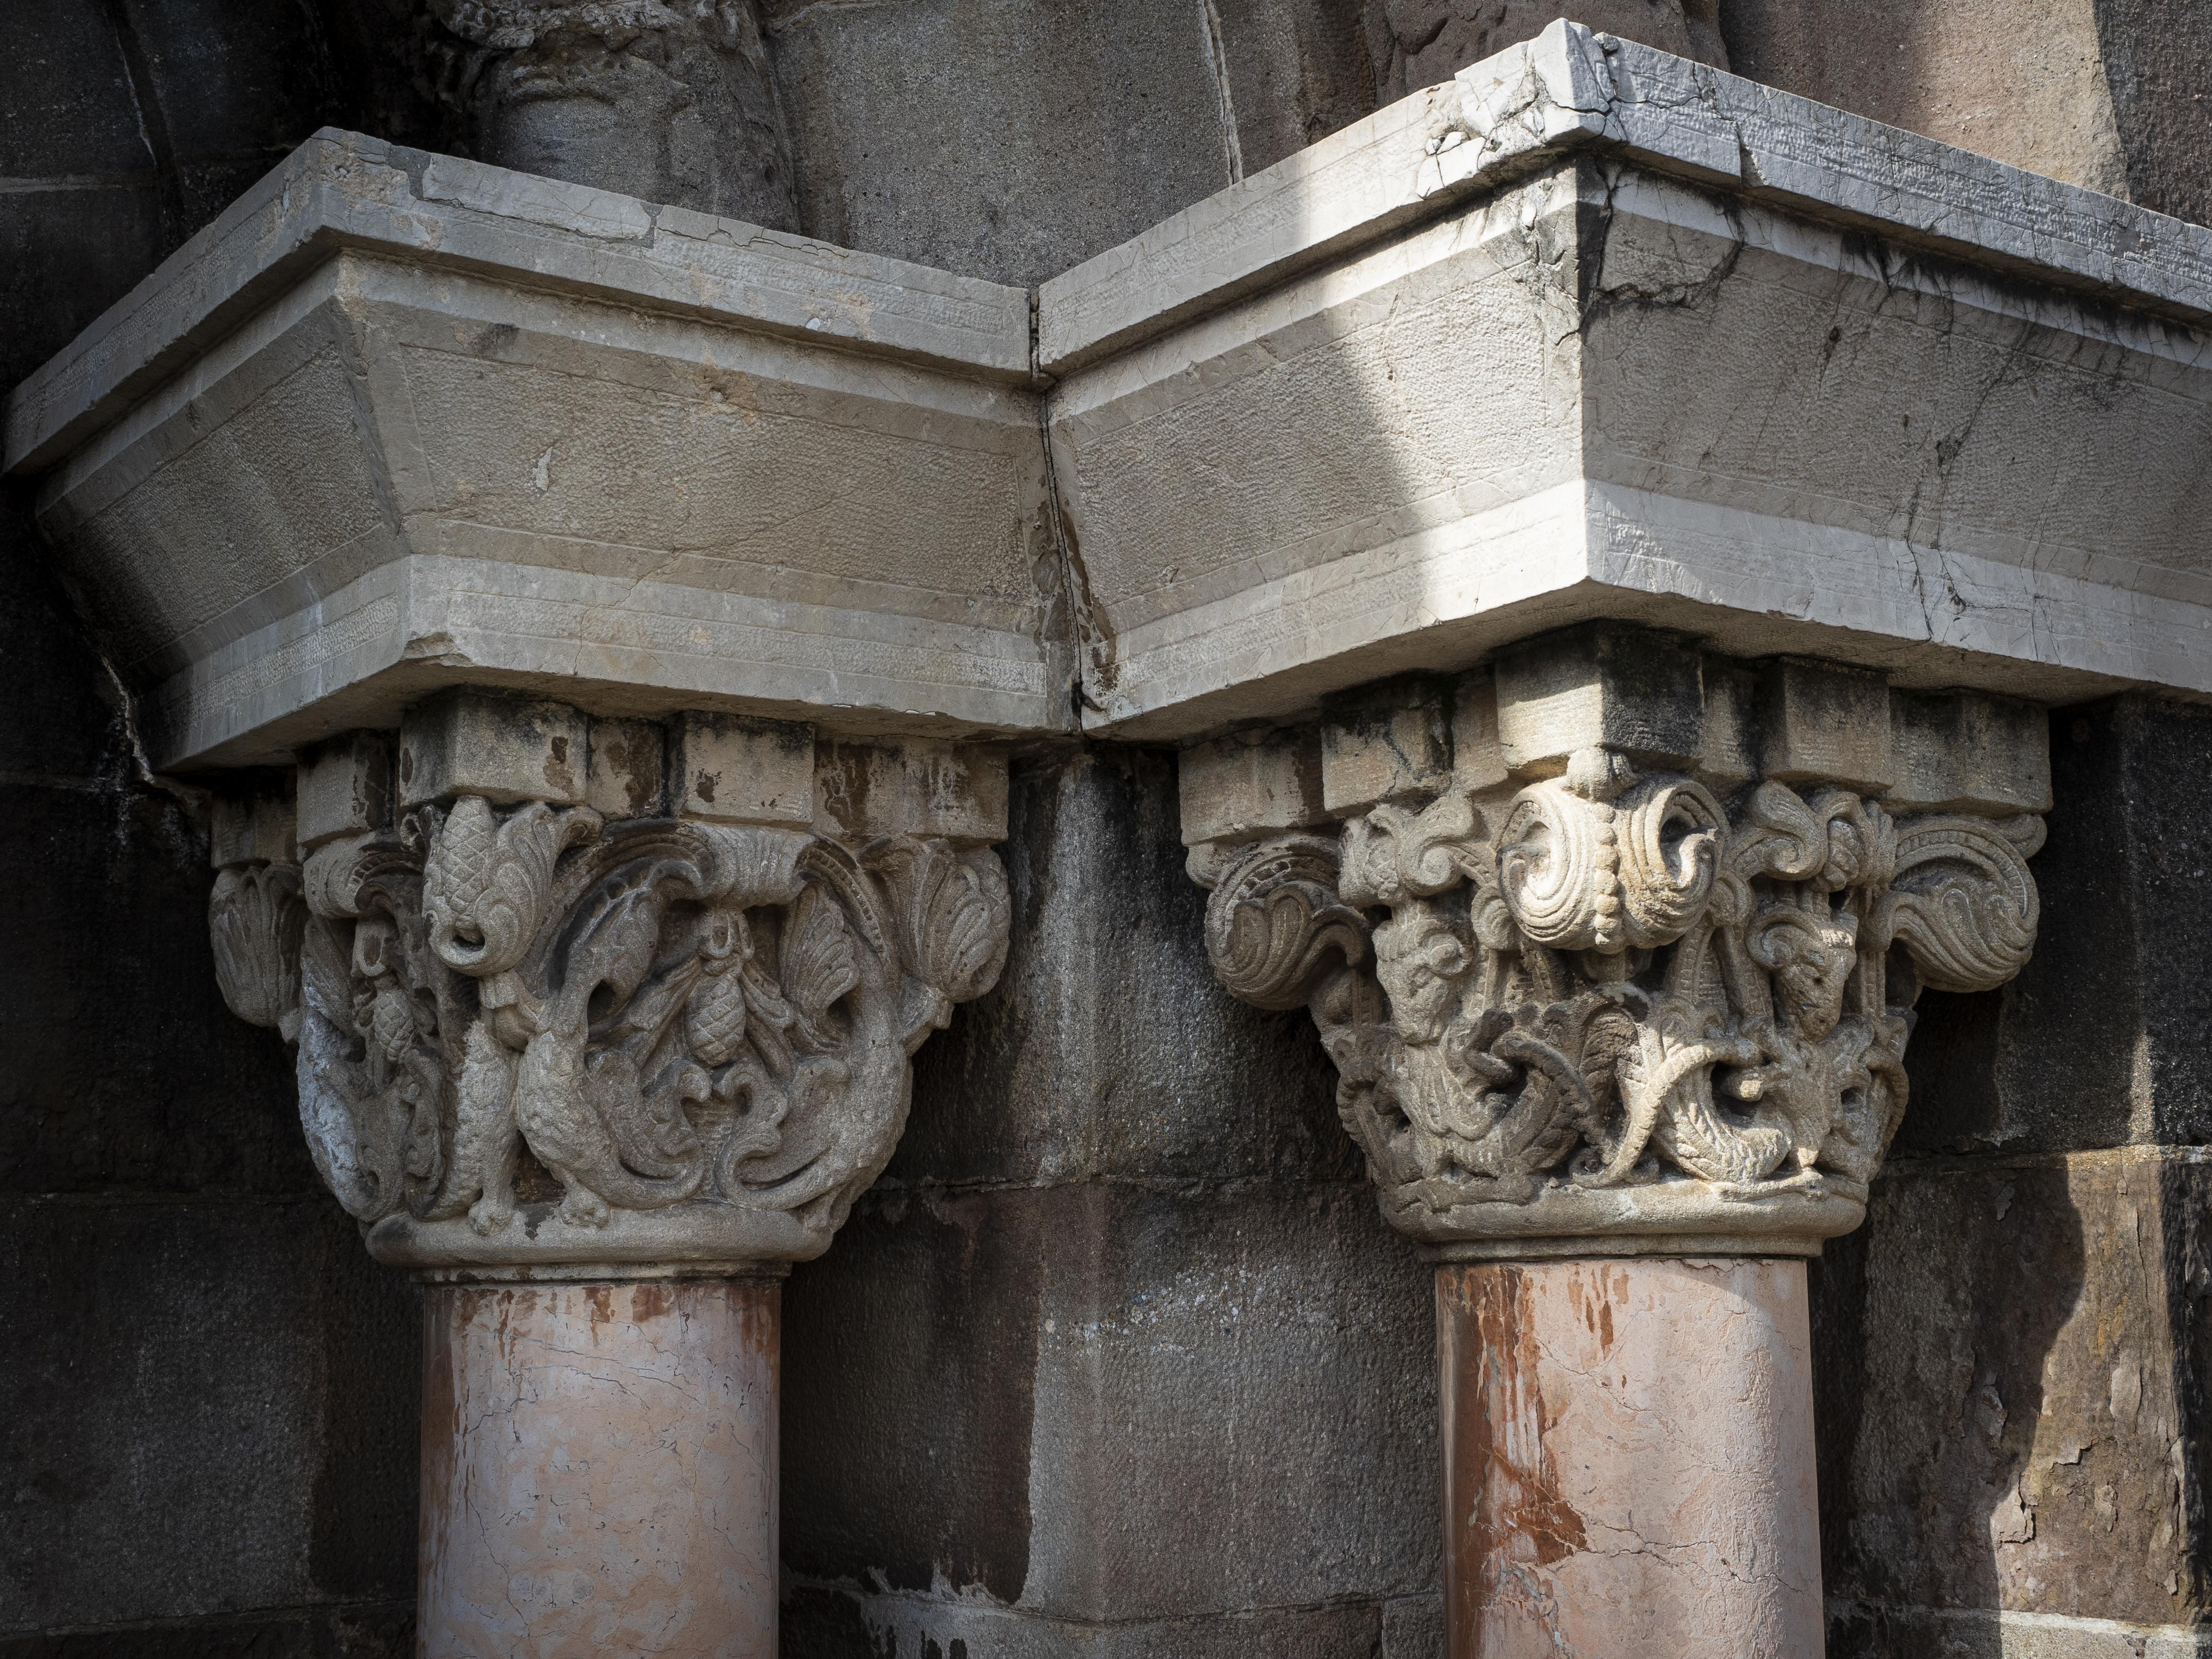 En els capitells de les columnes d'entrada presenten una decoració que imita el bestiari medieval. FOTO: Anna E. Puig